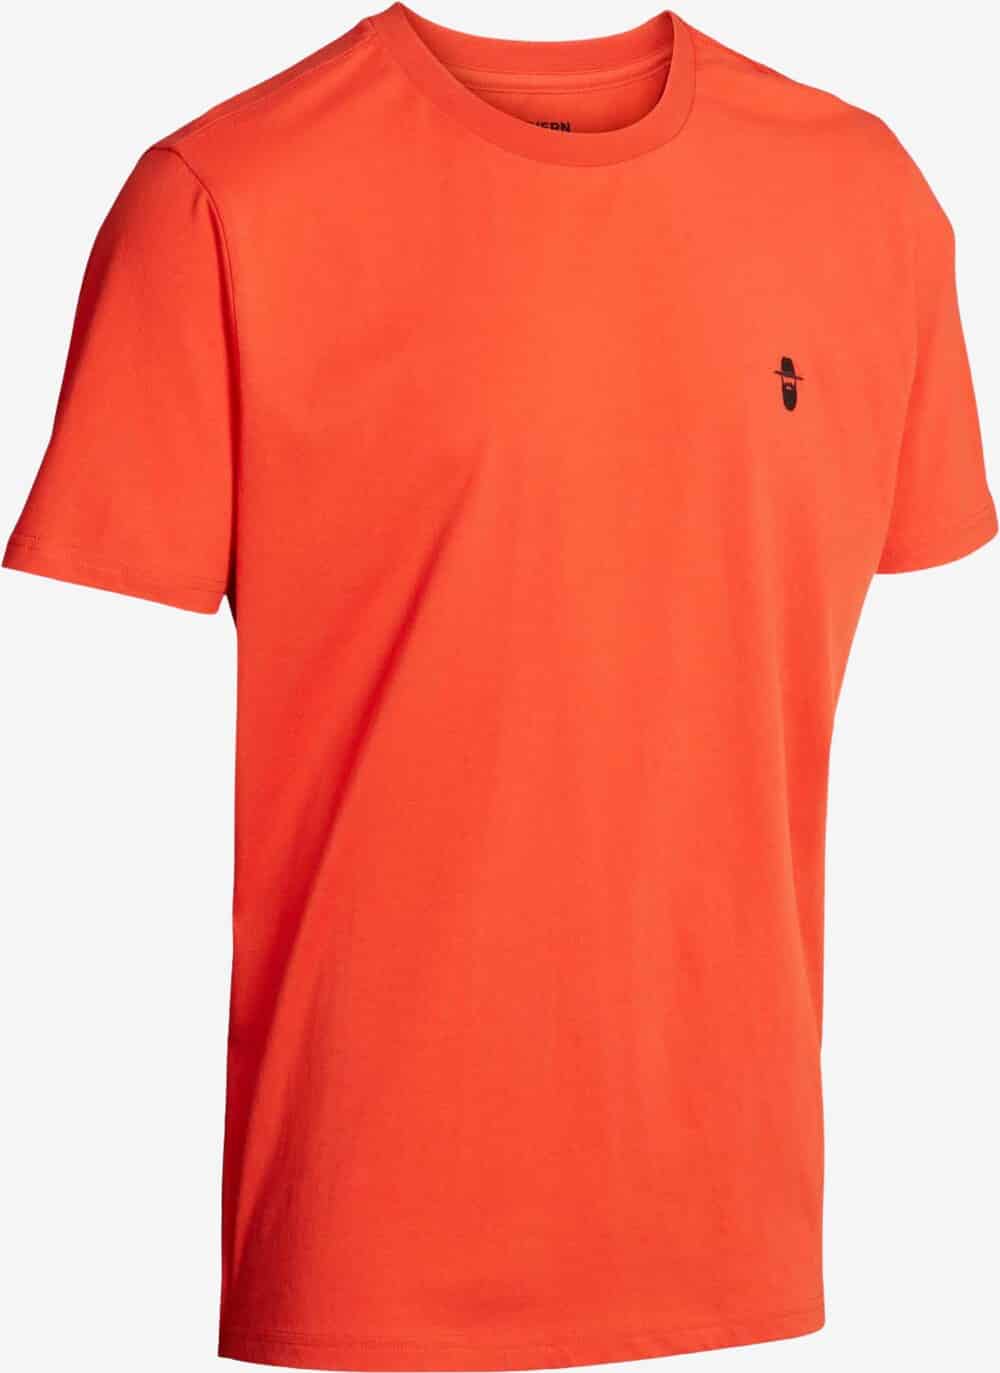 Se Northern Hunting - Karl T-shirt (Orange) - 3XL hos Friluft.dk